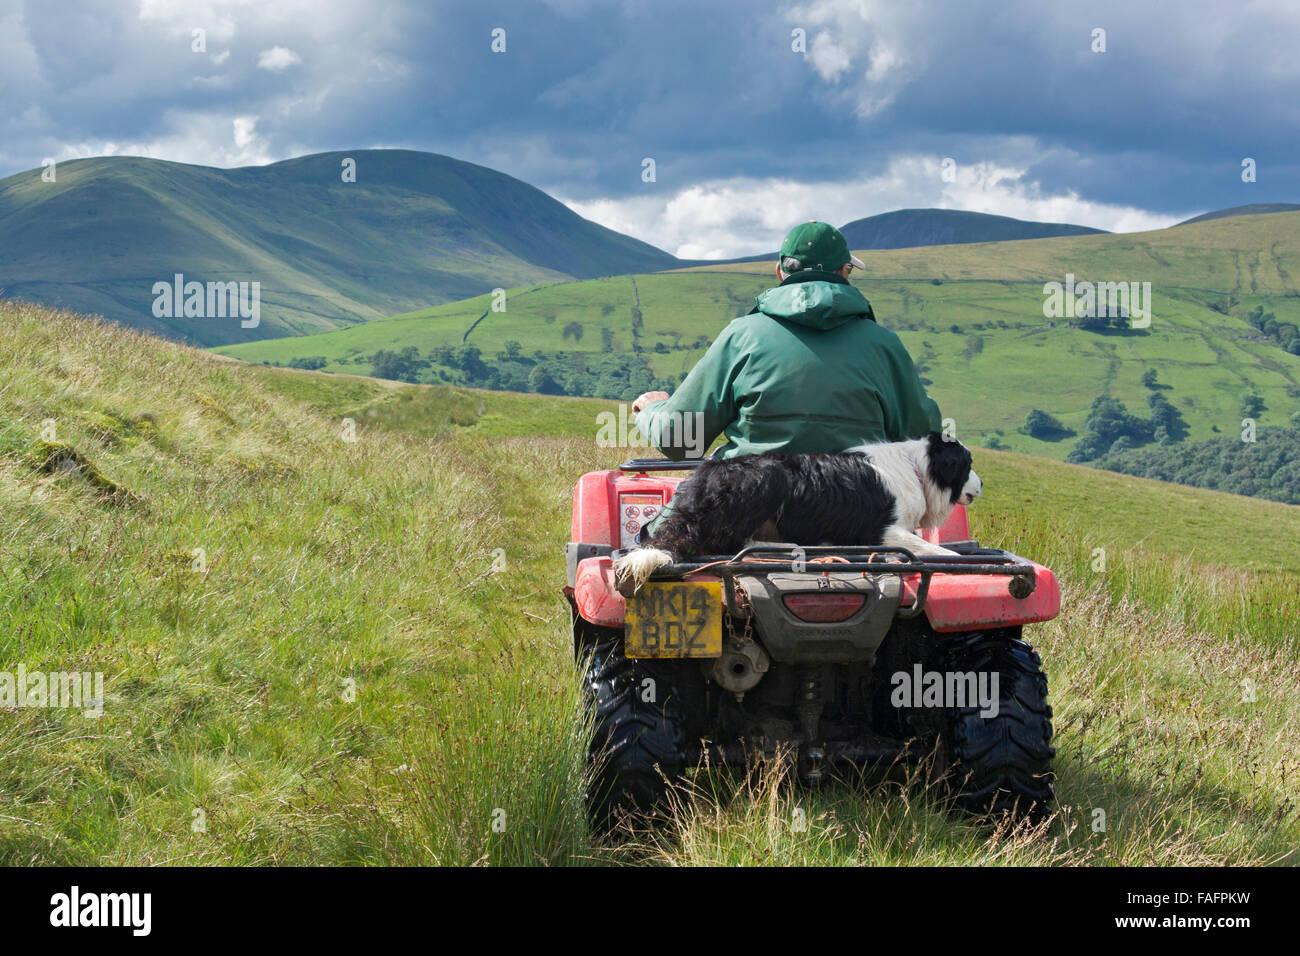 Berger sur un quad avec de berger assis derrière lui, la conduite sur les landes, UK Banque D'Images